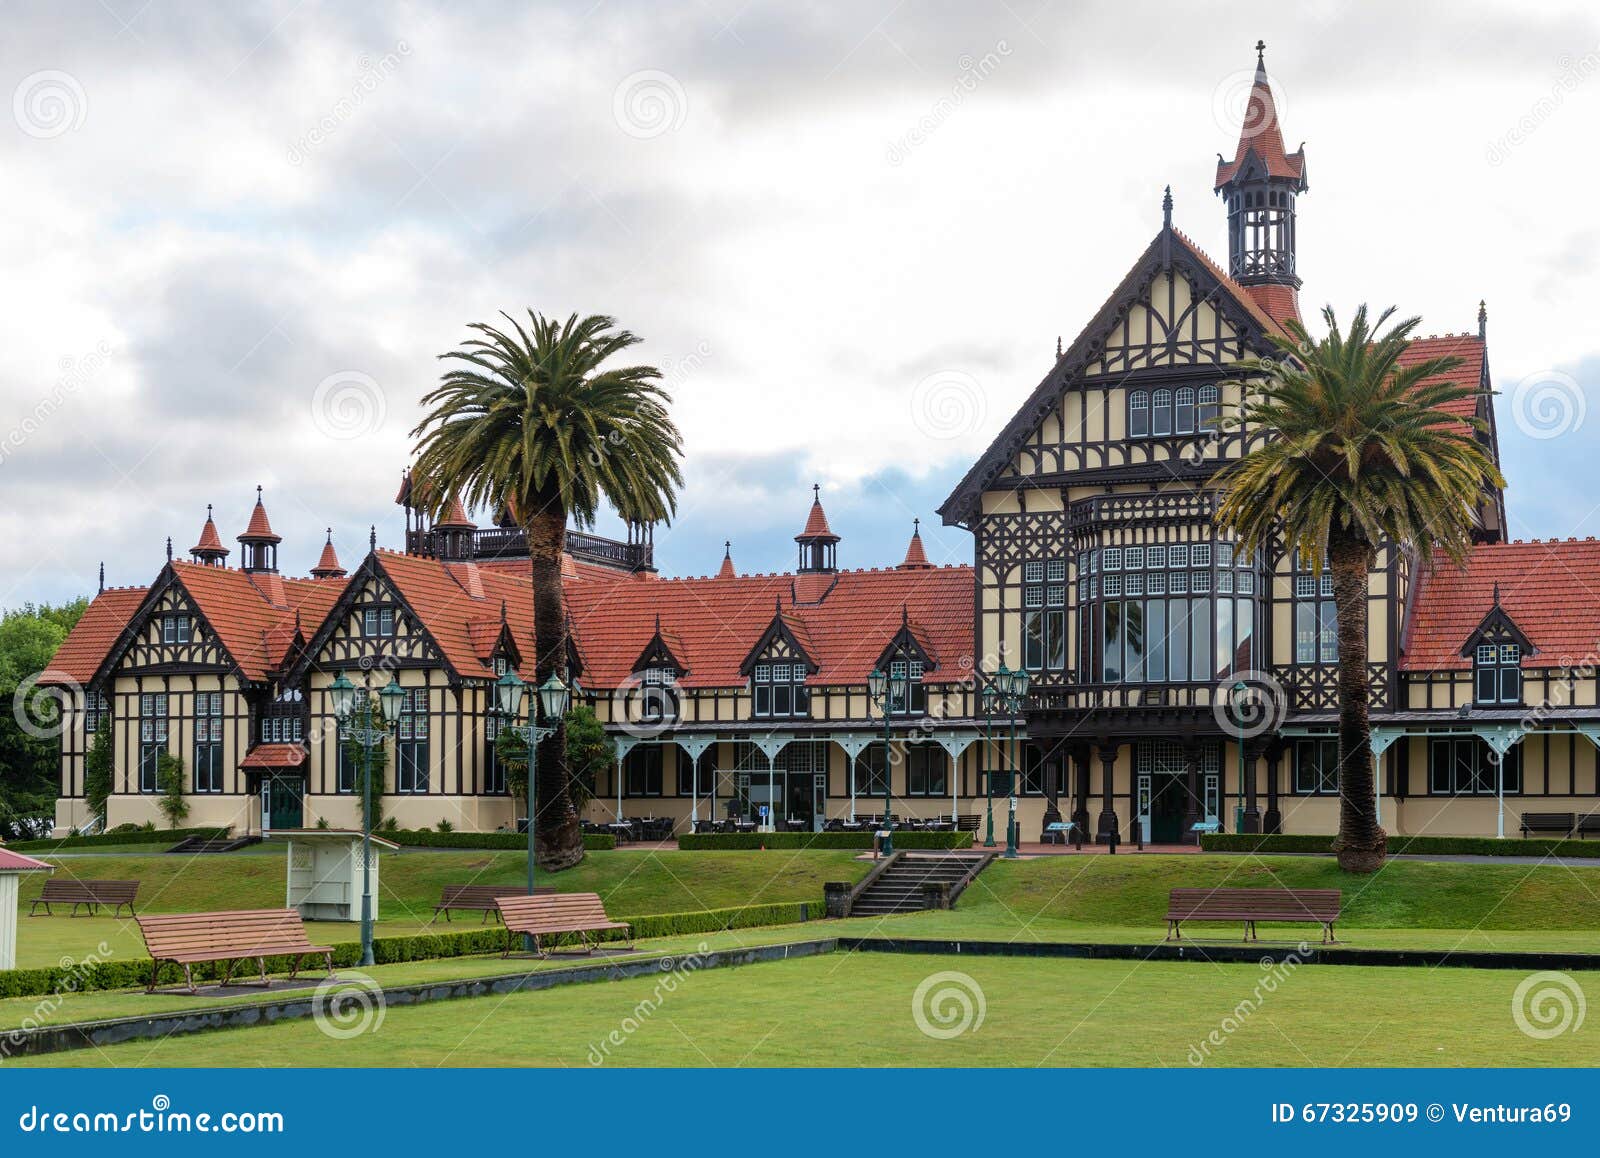 Rotorua Museum And Garden At Sunrise, New Zealand Stock Image - Image ...
